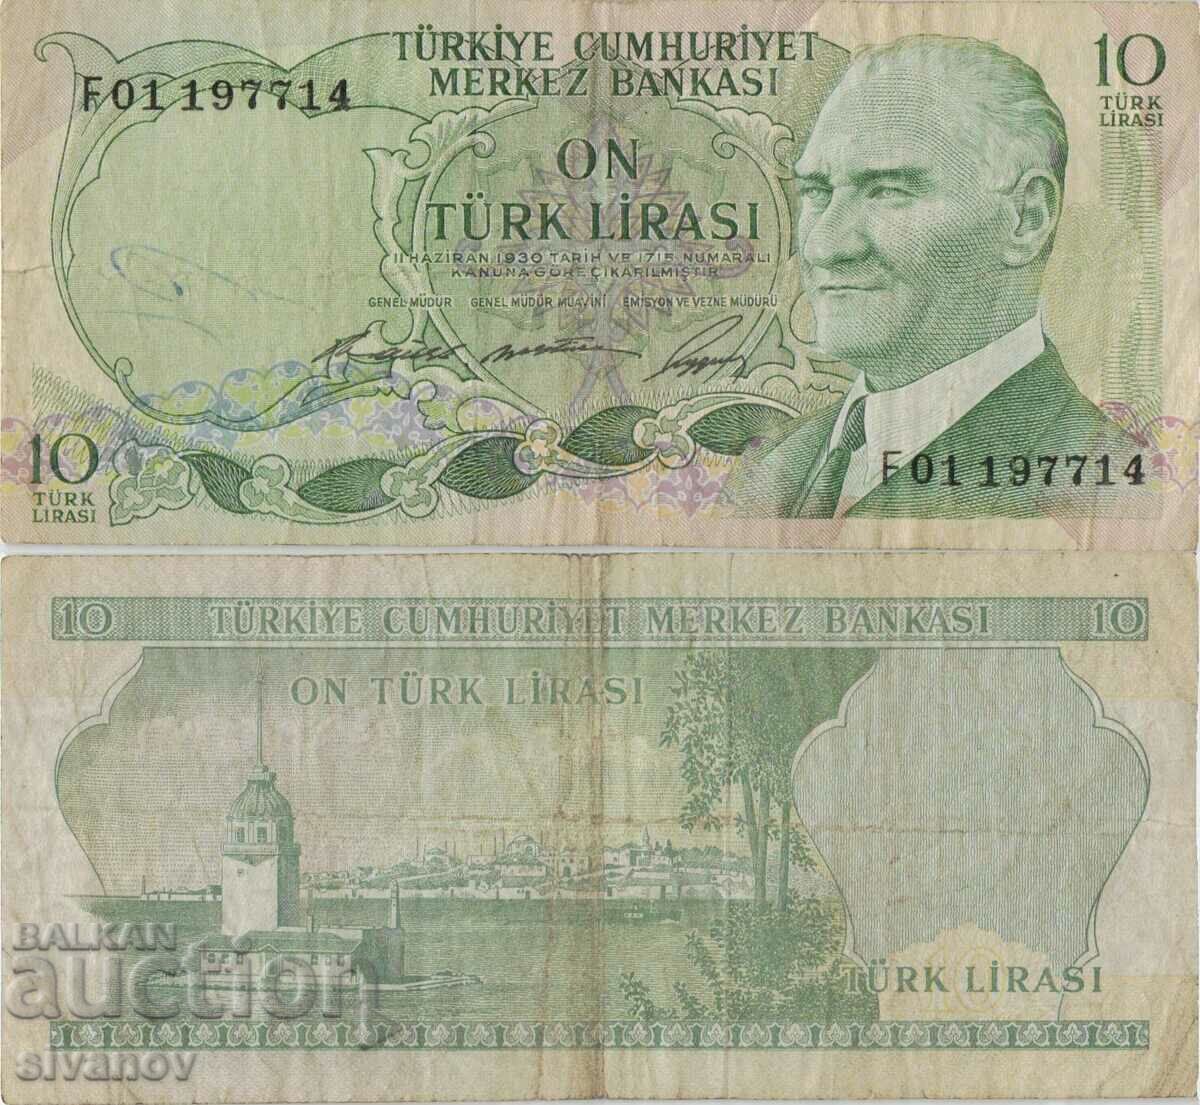 Turkey 10 lira 1930 (1966) year banknote #5180